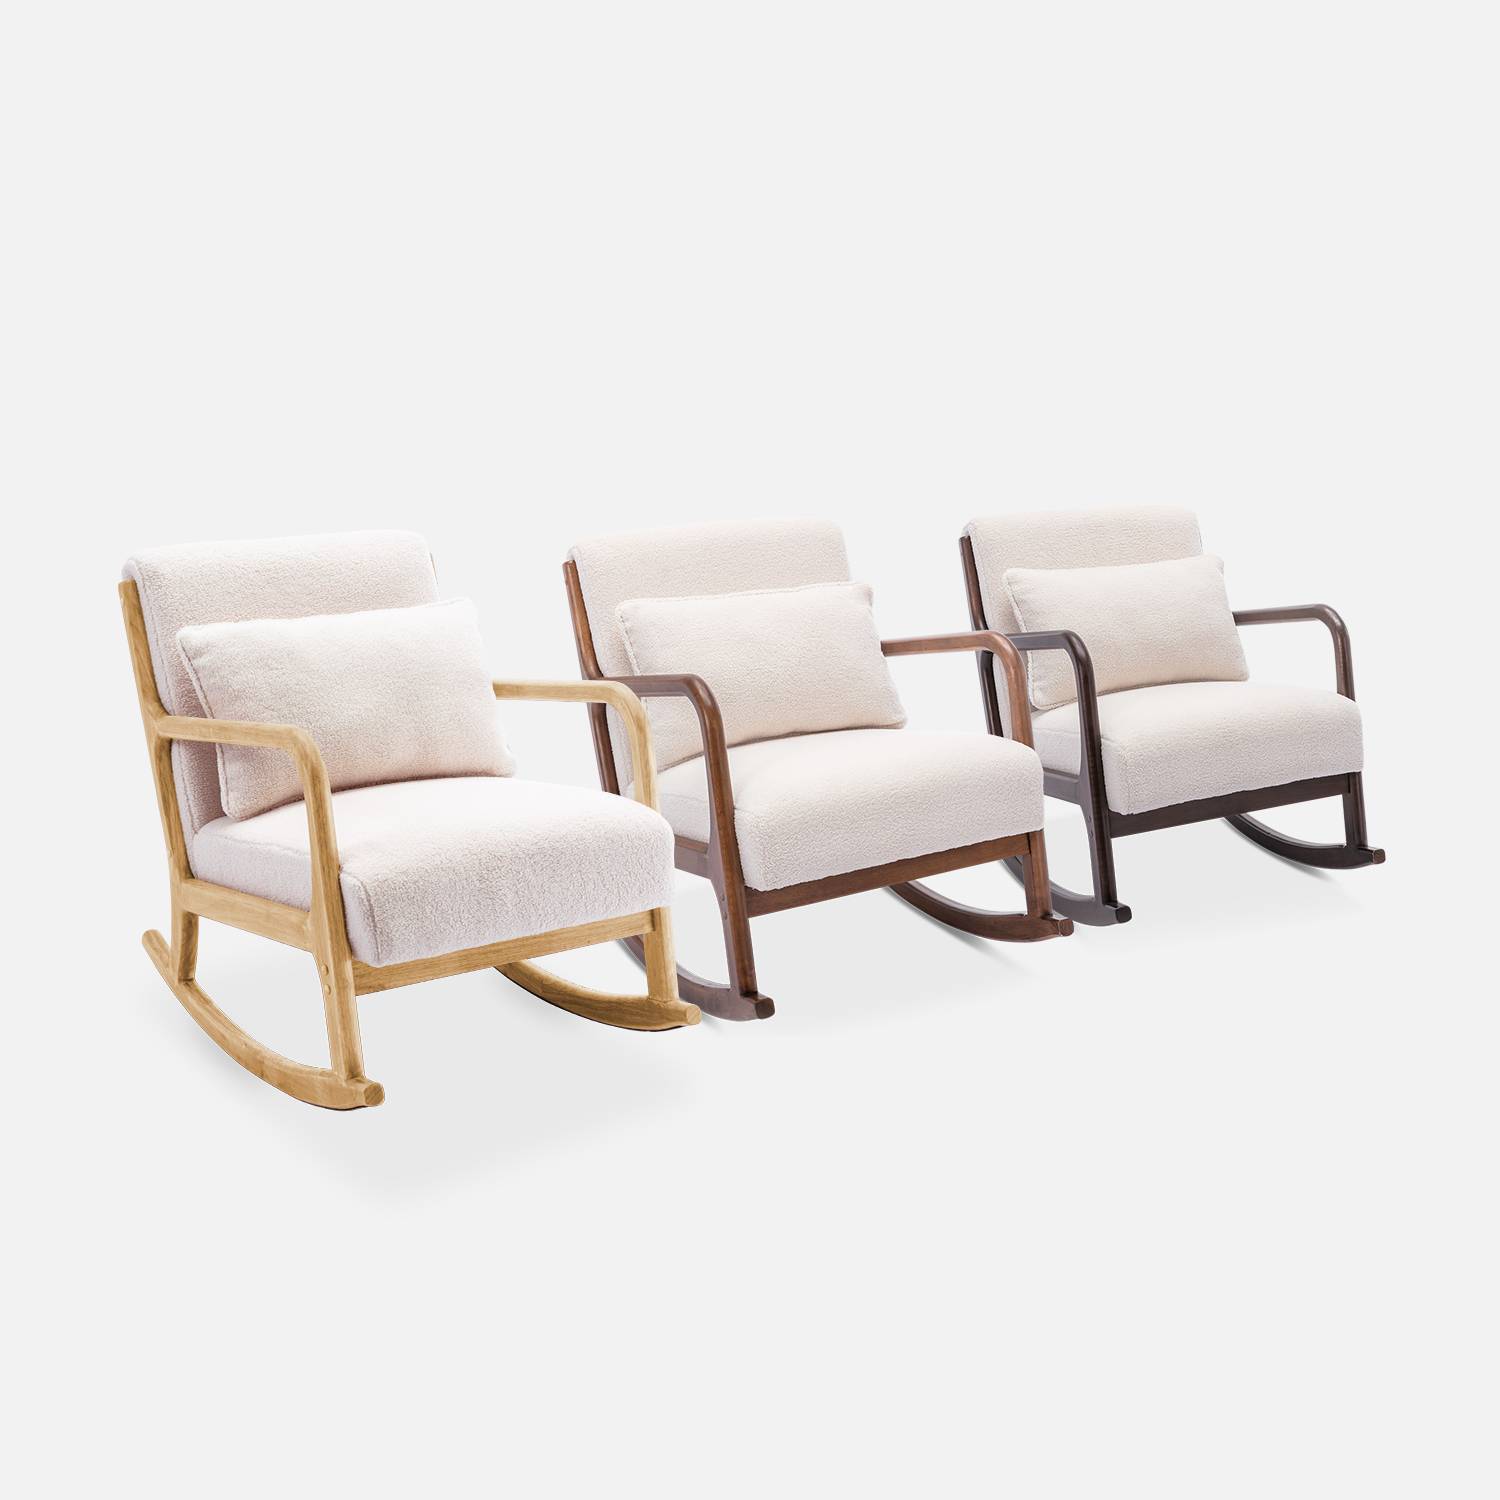 Fauteuil à bascule design en bois et tissu, bouclettes blanches, 1 place, rocking chair scandinave,sweeek,Photo8